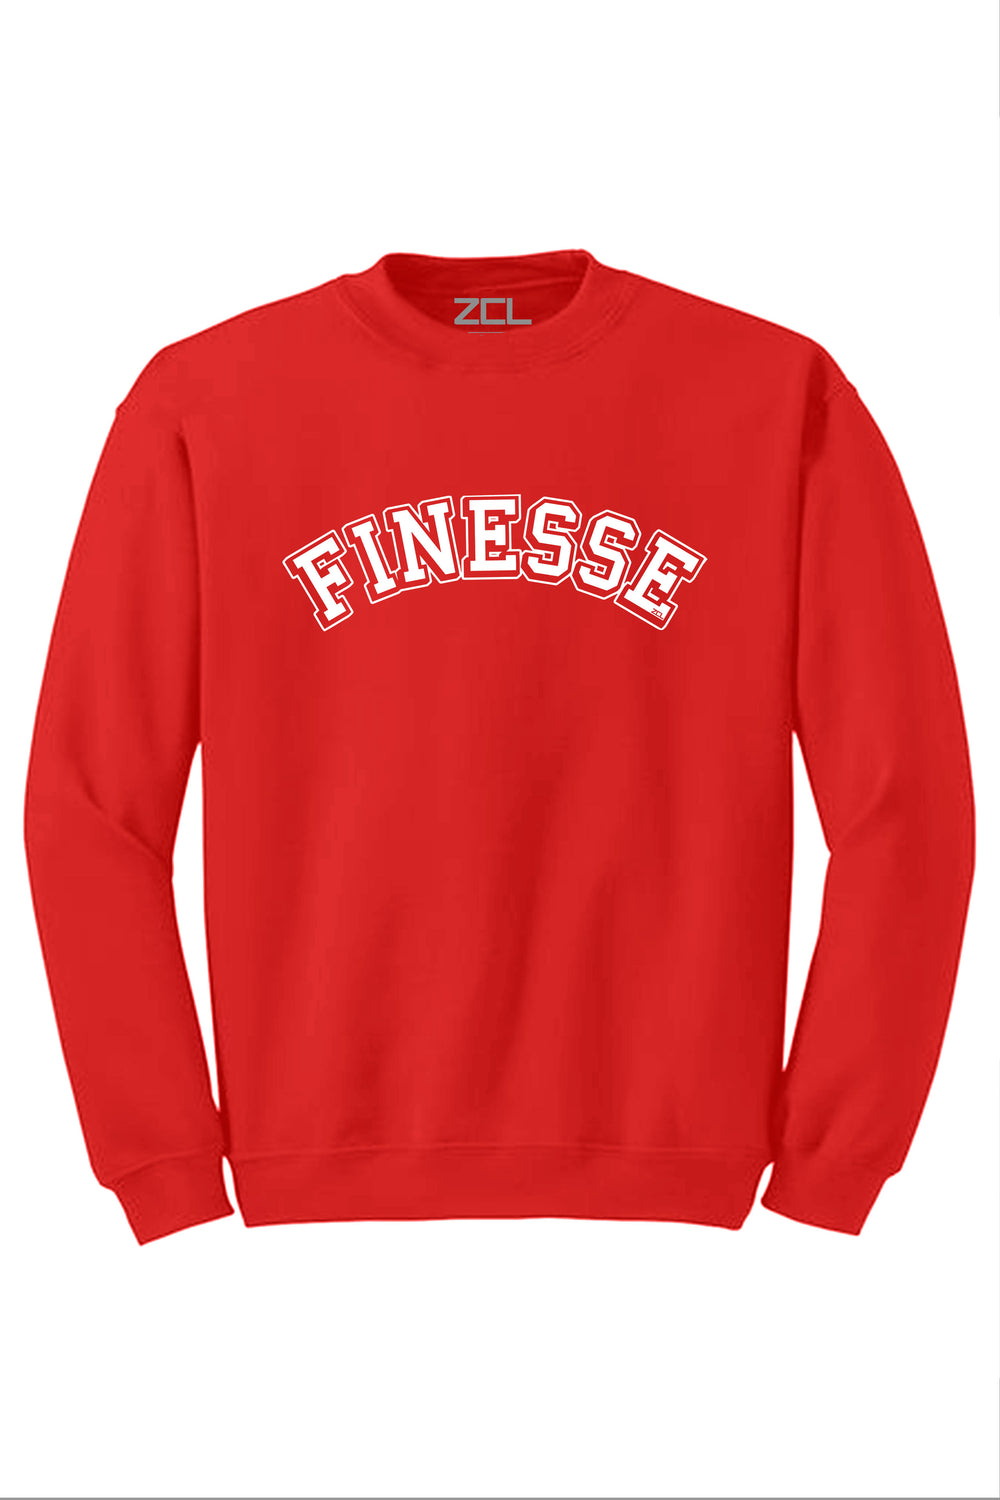 Finesse Crewneck Sweatshirt (White Logo) - Zamage